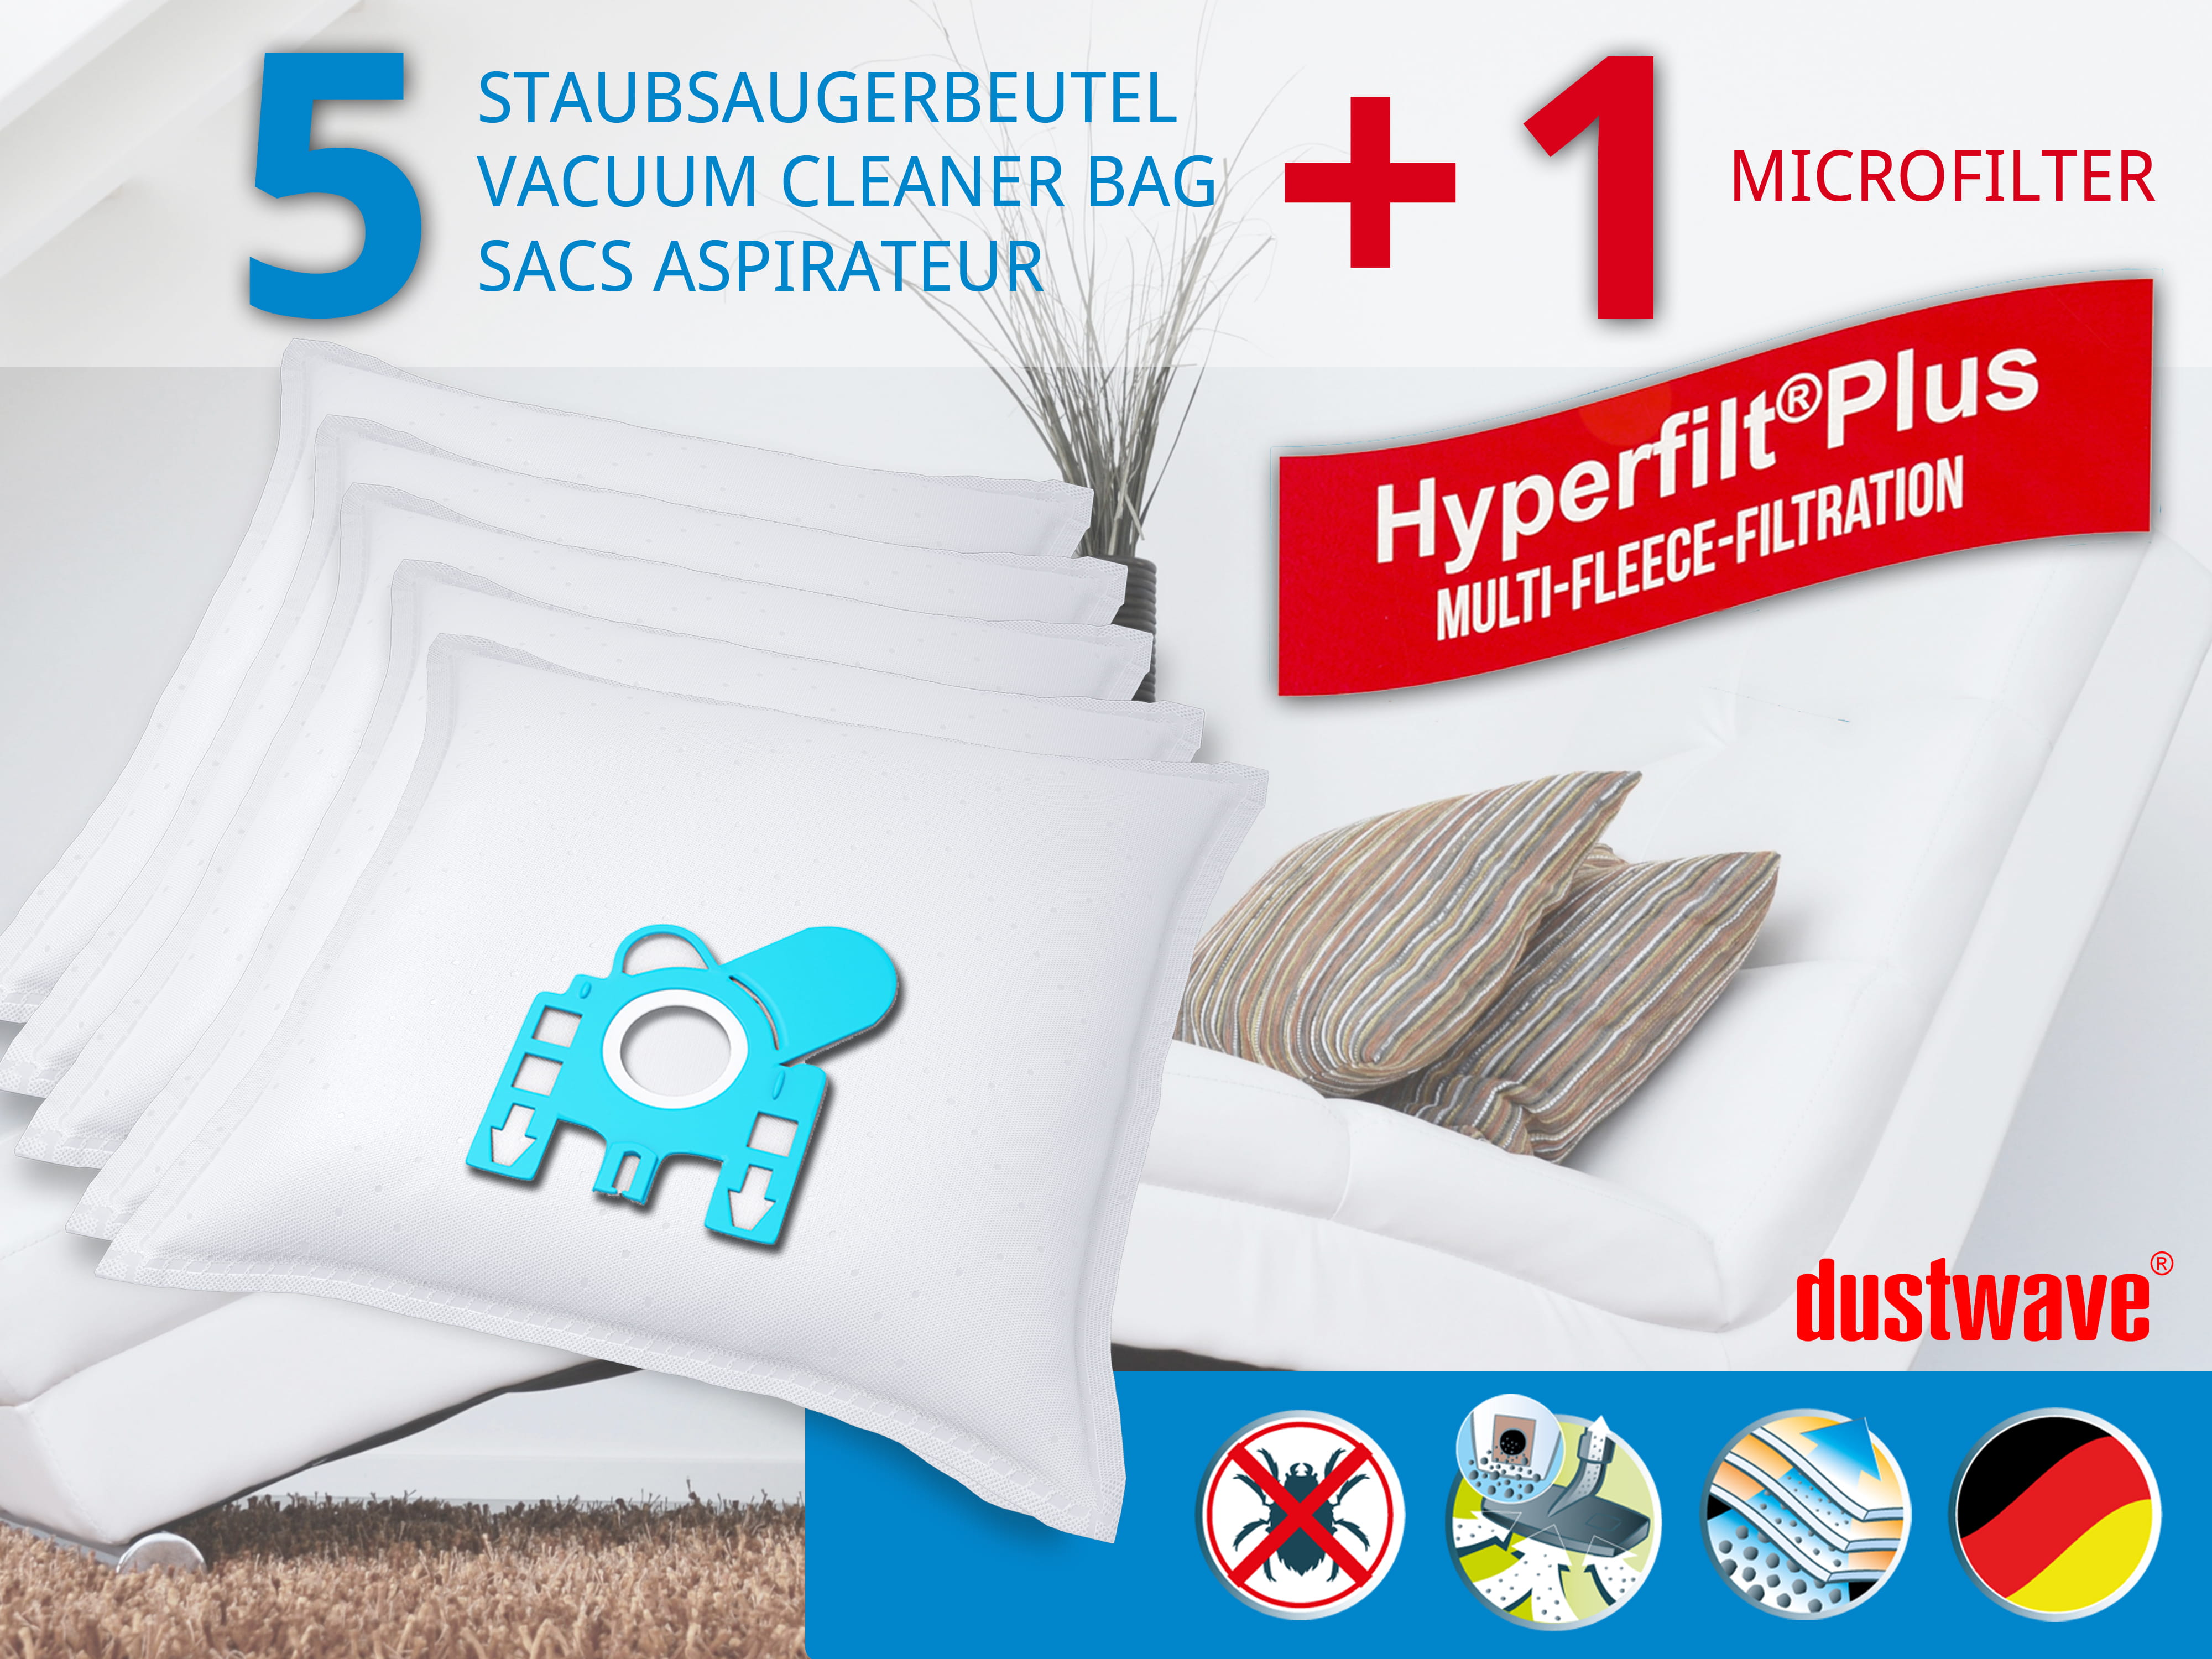 Dustwave® 5 Staubsaugerbeutel für Miele Senator 1400 C Special - hocheffizient, mehrlagiges Mikrovlies mit Hygieneverschluss - Made in Germany